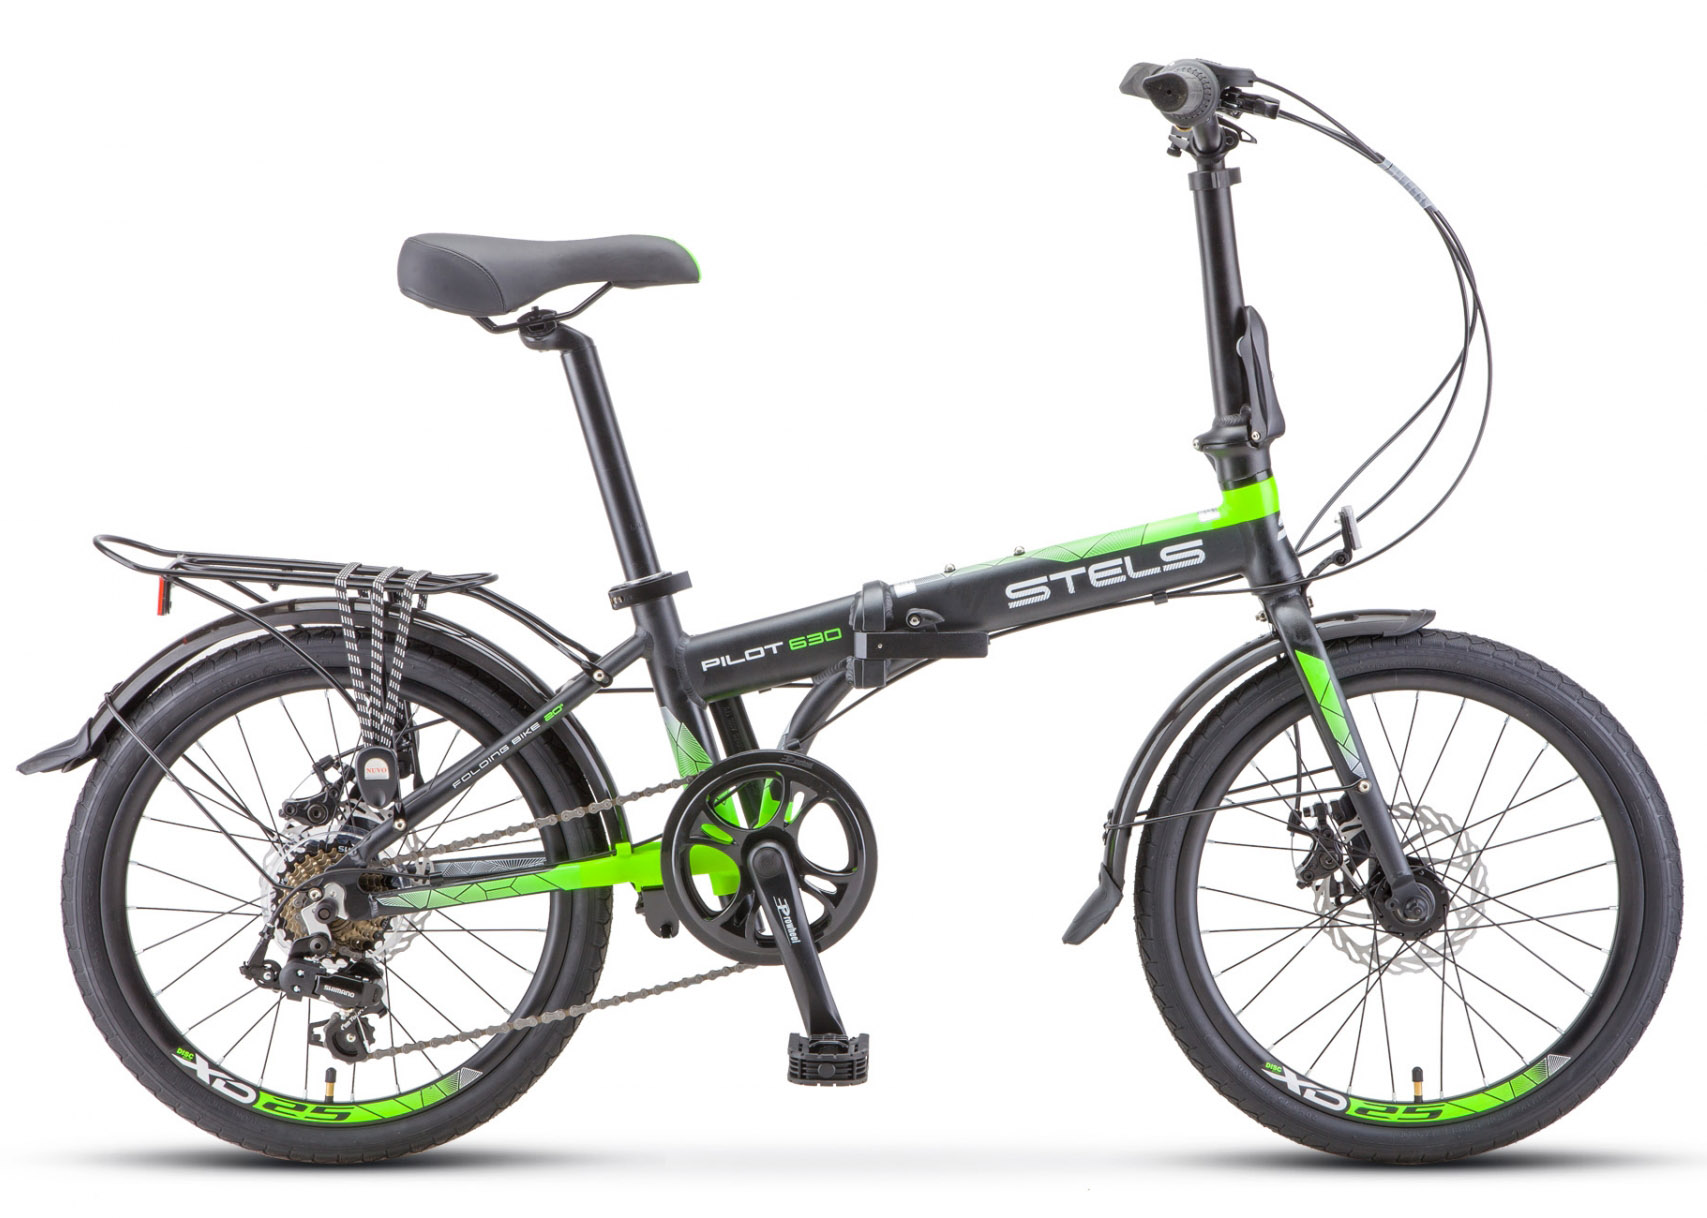  Отзывы о Складном велосипеде Stels Pilot 630 MD V010 2020